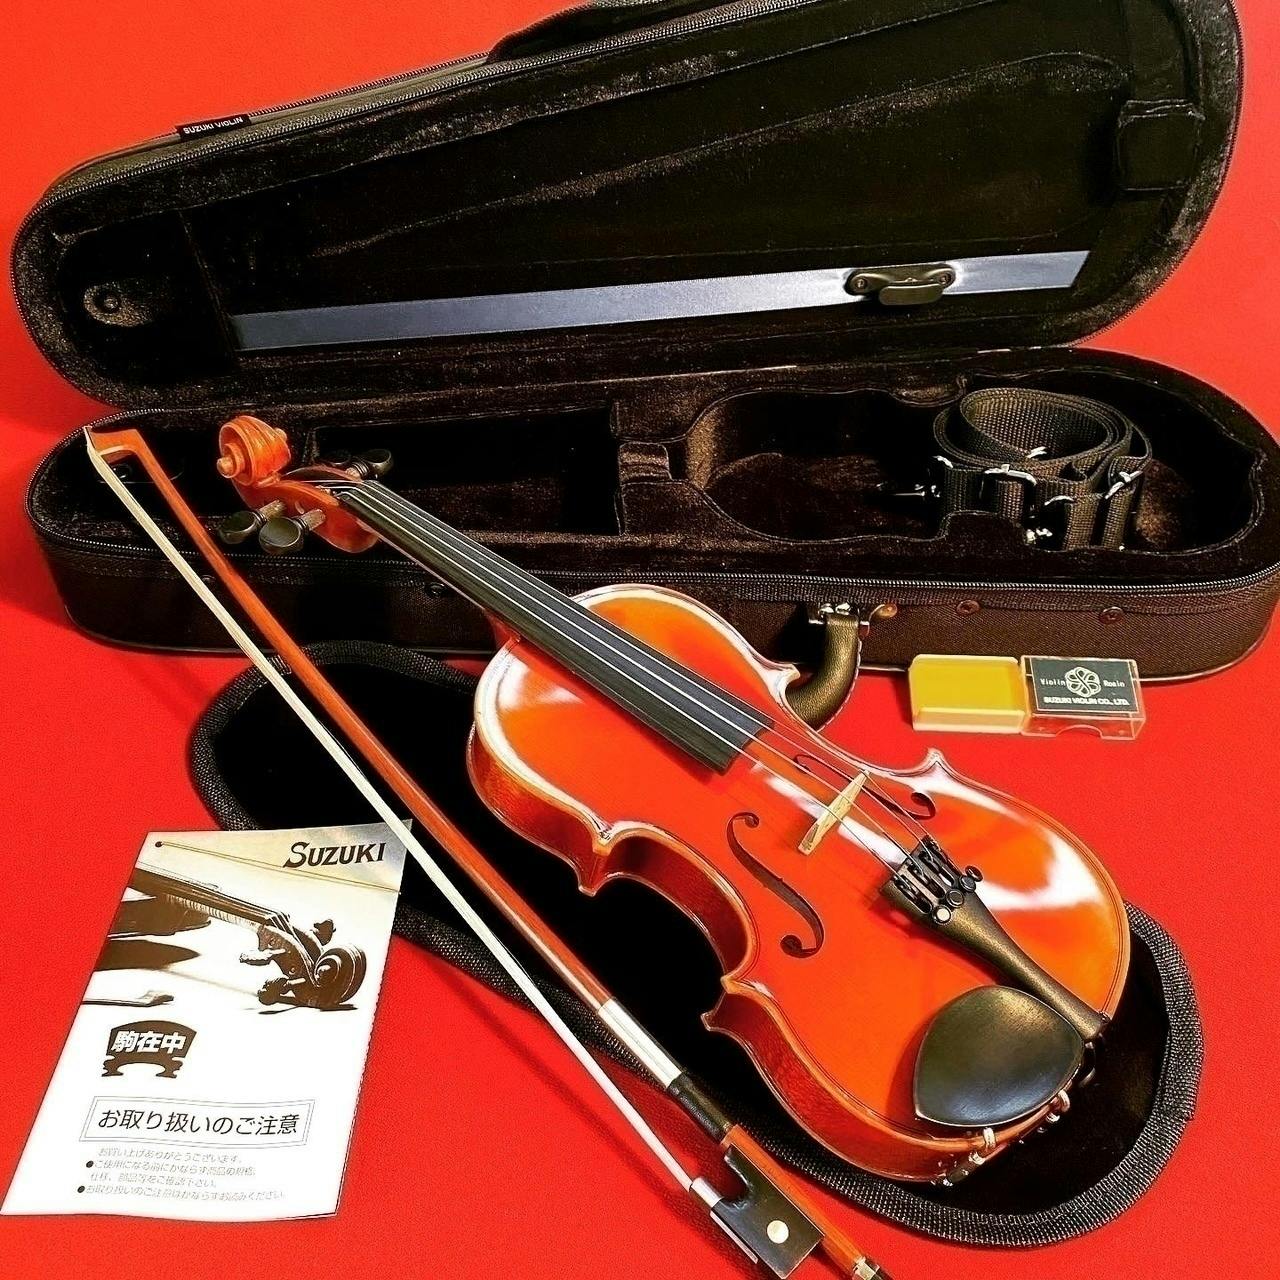 日本のバイオリン作りの文化を残したい～ 世界一の弦楽器メーカーを目指します - CAMPFIRE (キャンプファイヤー)